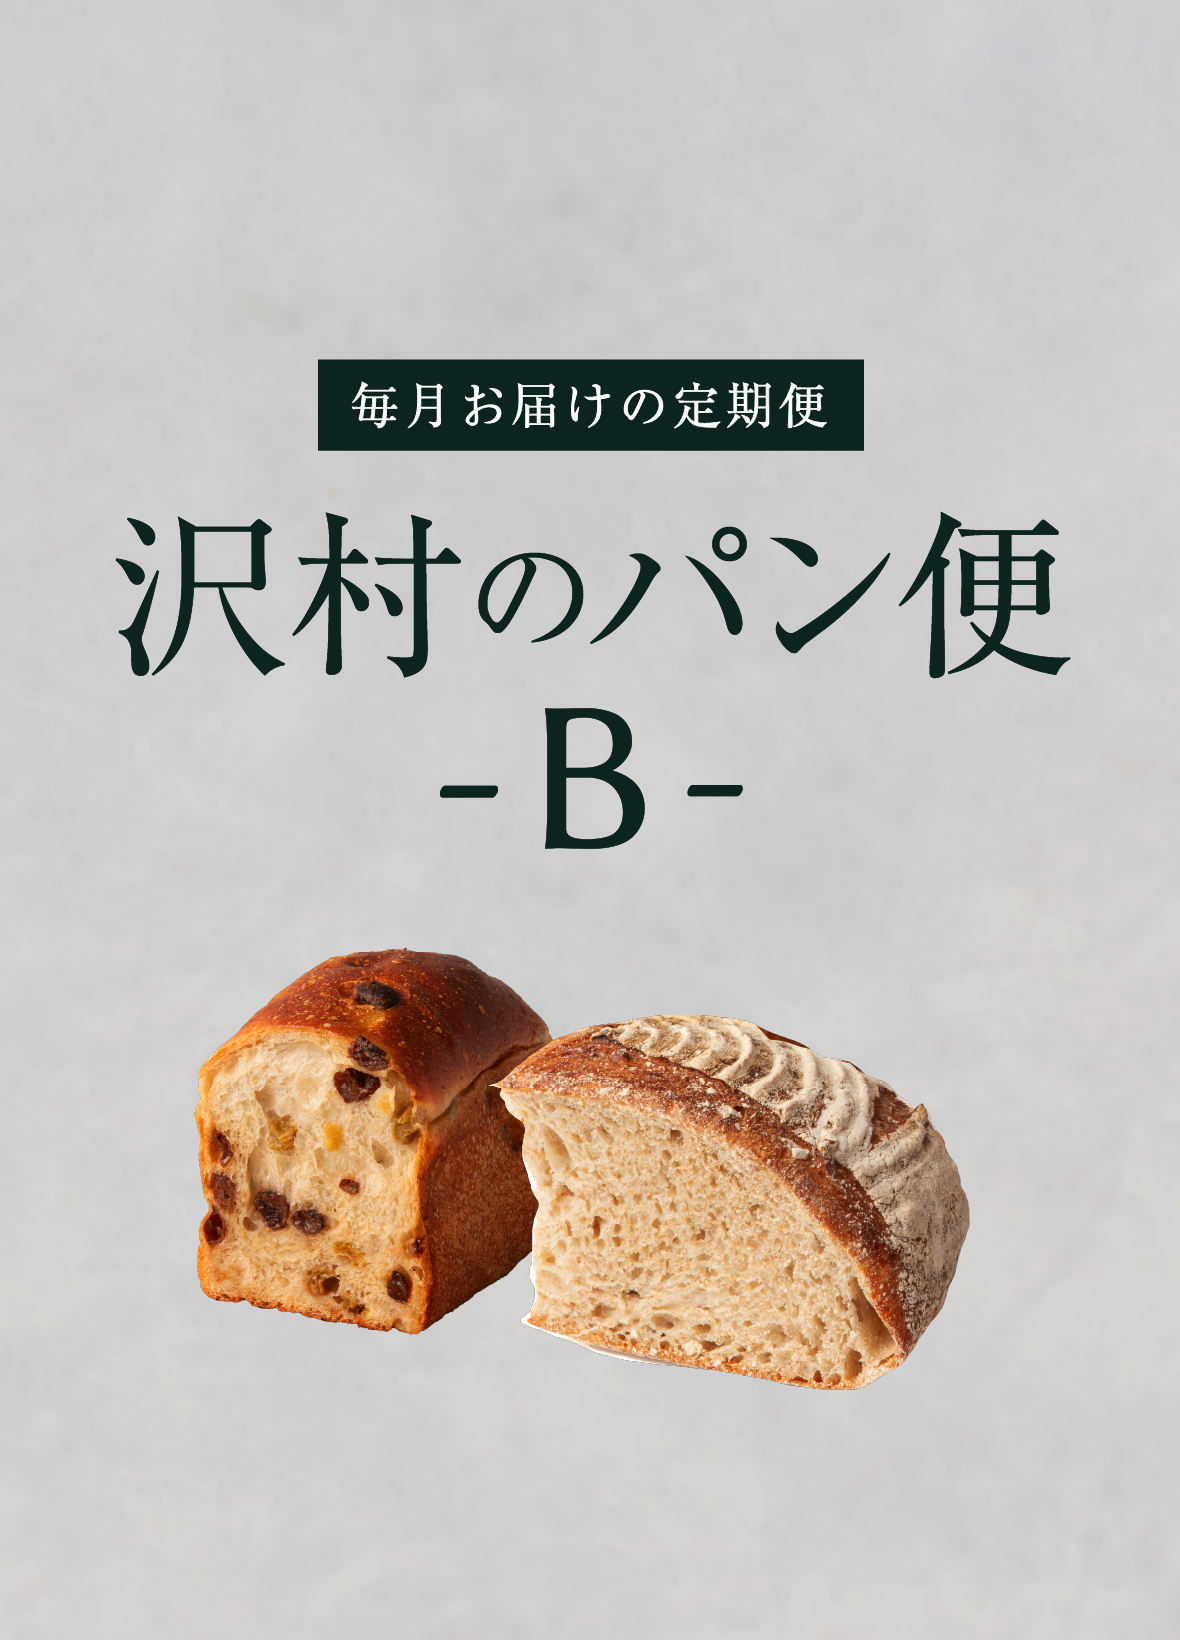 【沢村のパン便】B おすすめパンセット